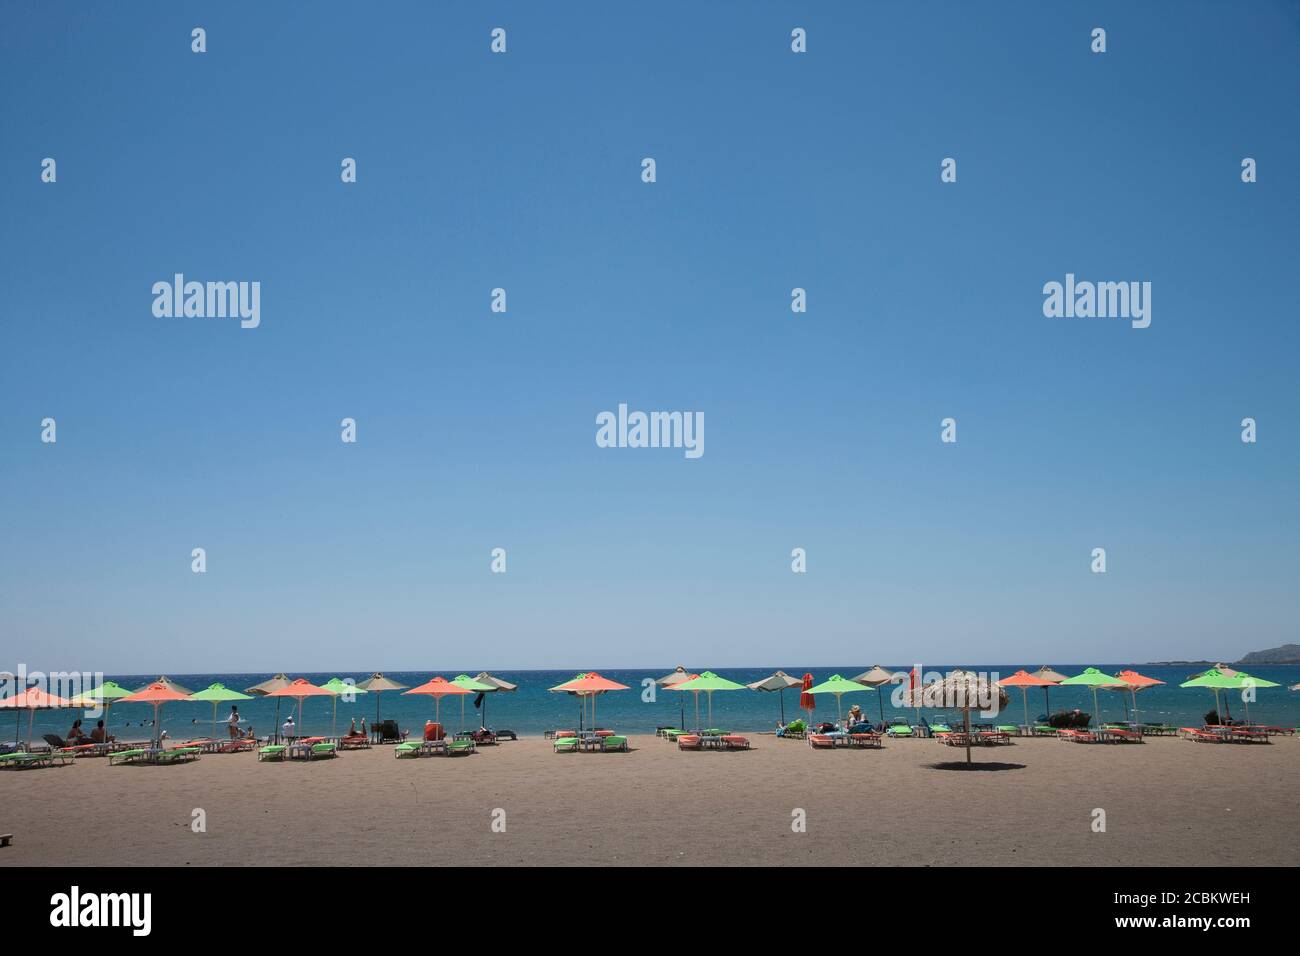 Sun umbrellas on beach at Giorgioupolis, Crete, Greece Stock Photo